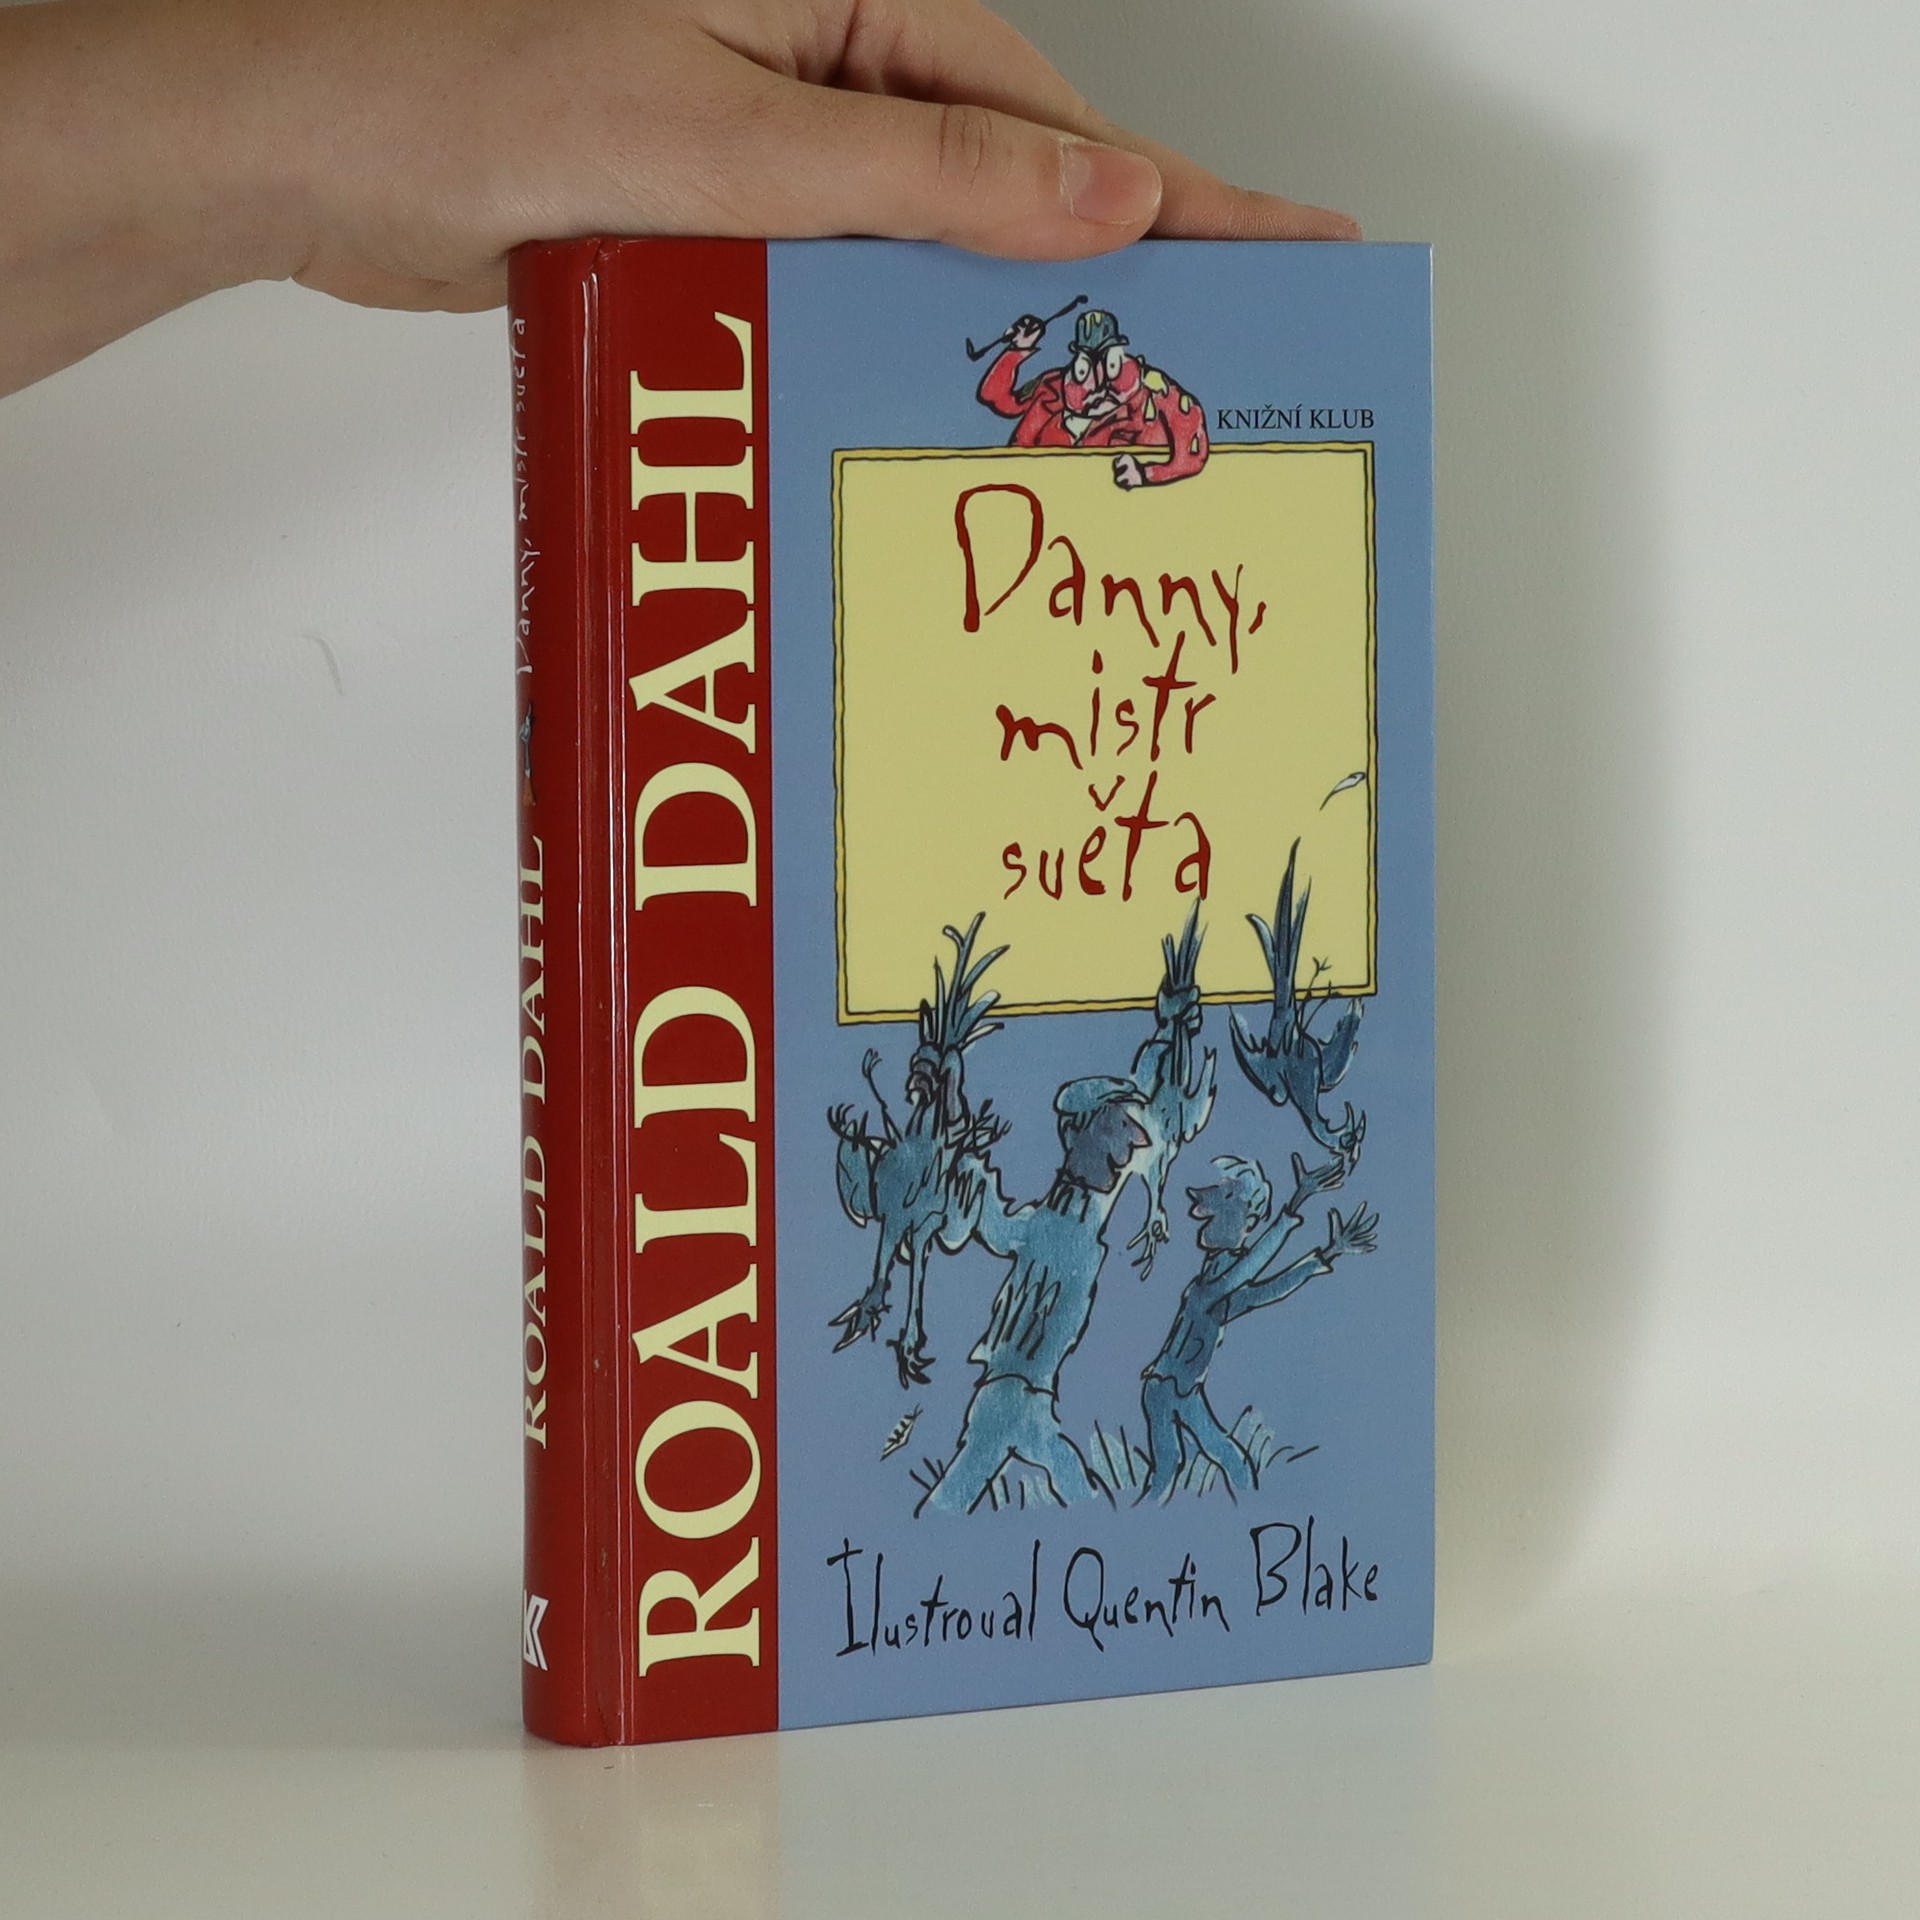 Danny, mistr světa by Roald Dahl